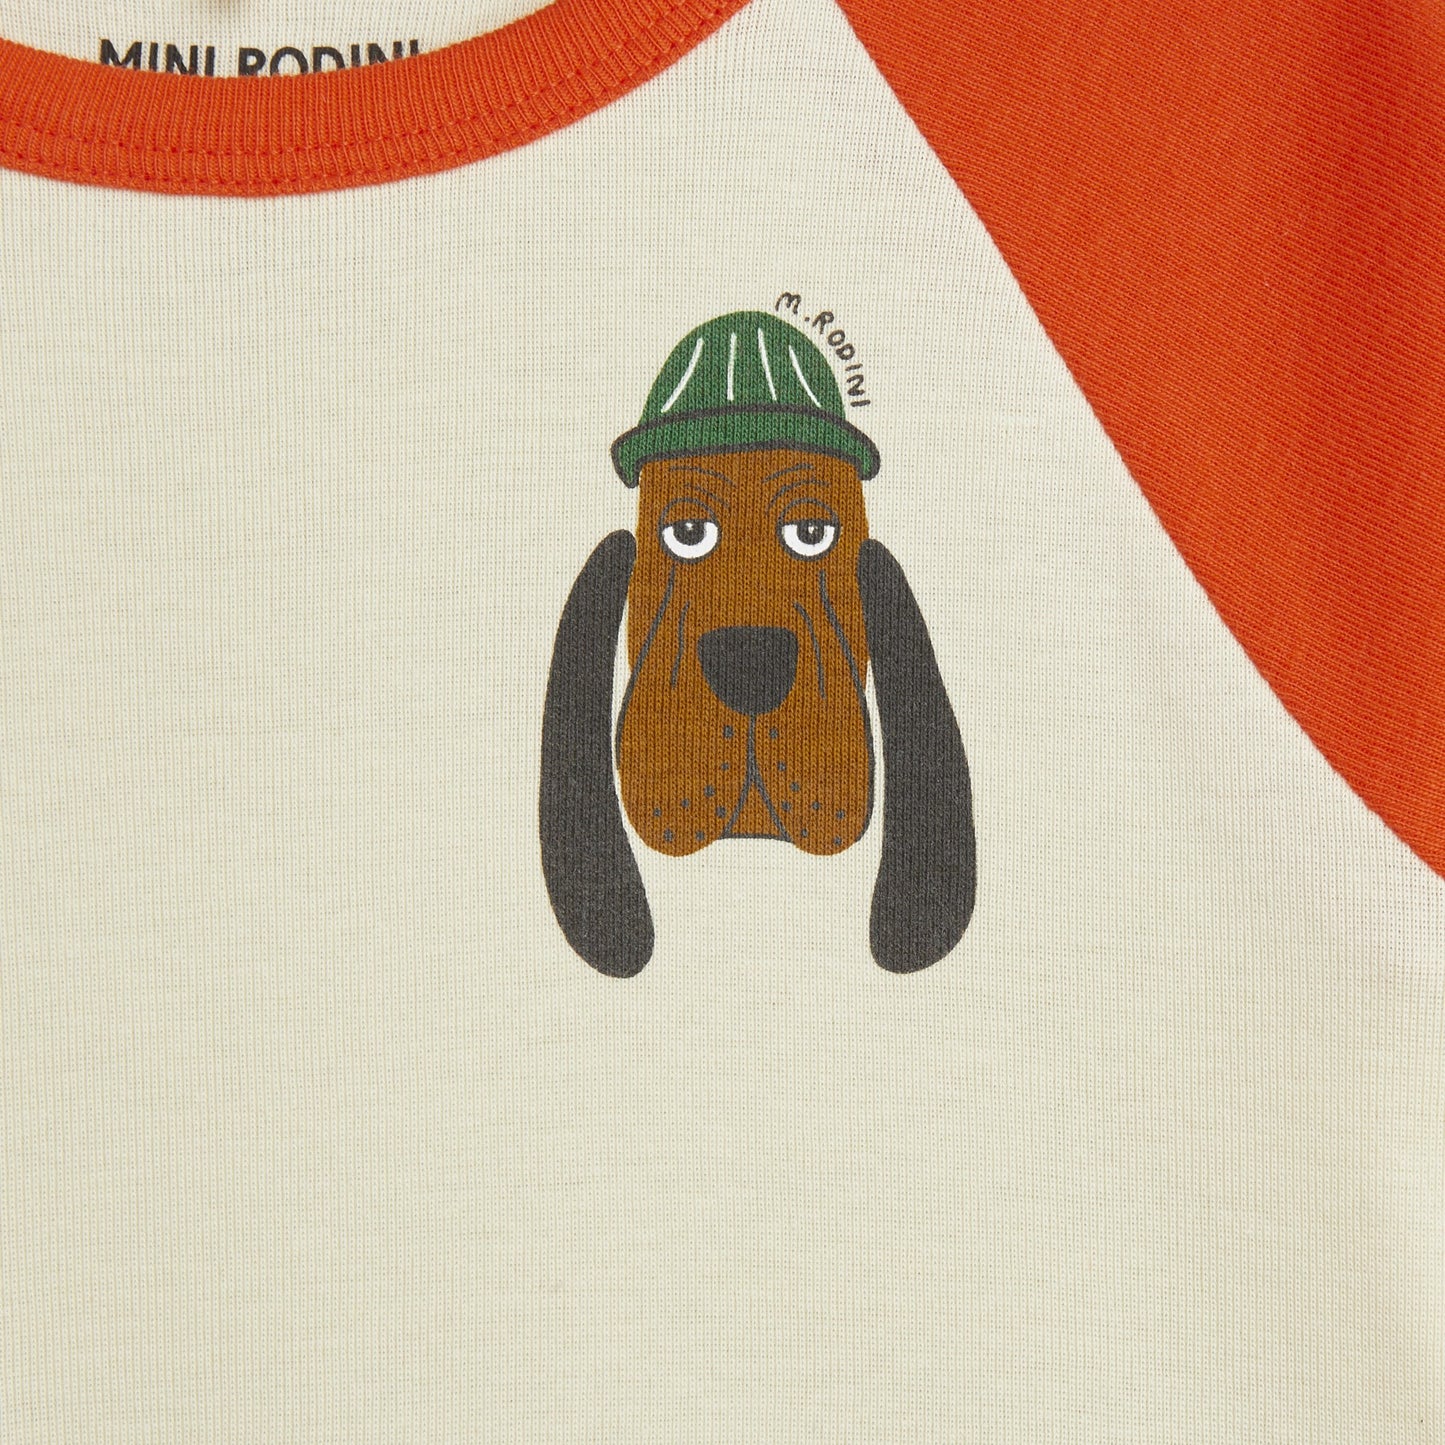 MINI RODINI Bloodhound Dress ALWAYS SHOW